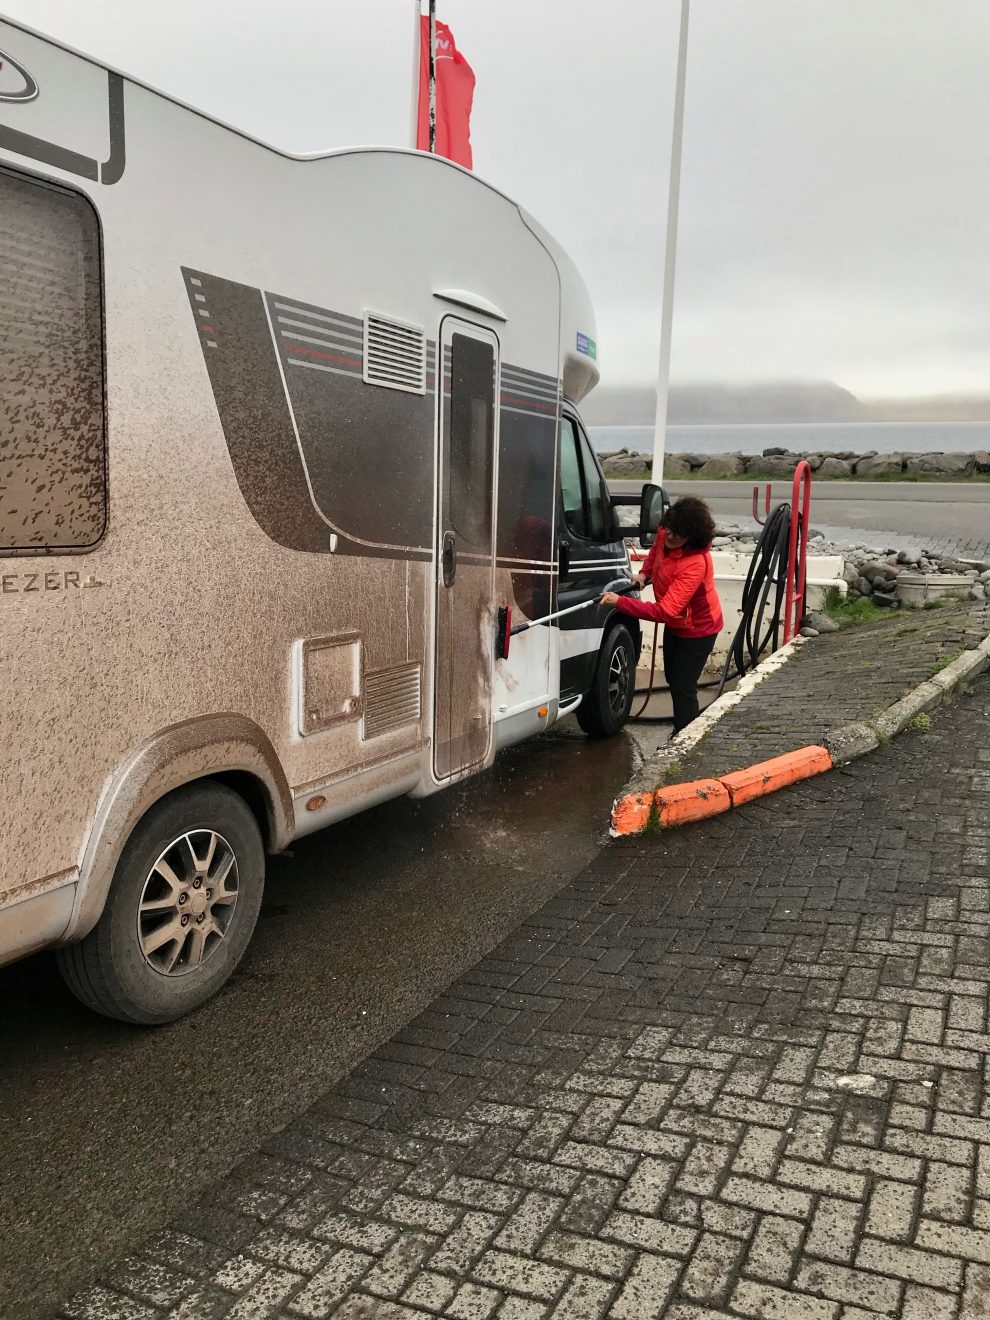 Così si riduce il camper negli sterrati islandesi.